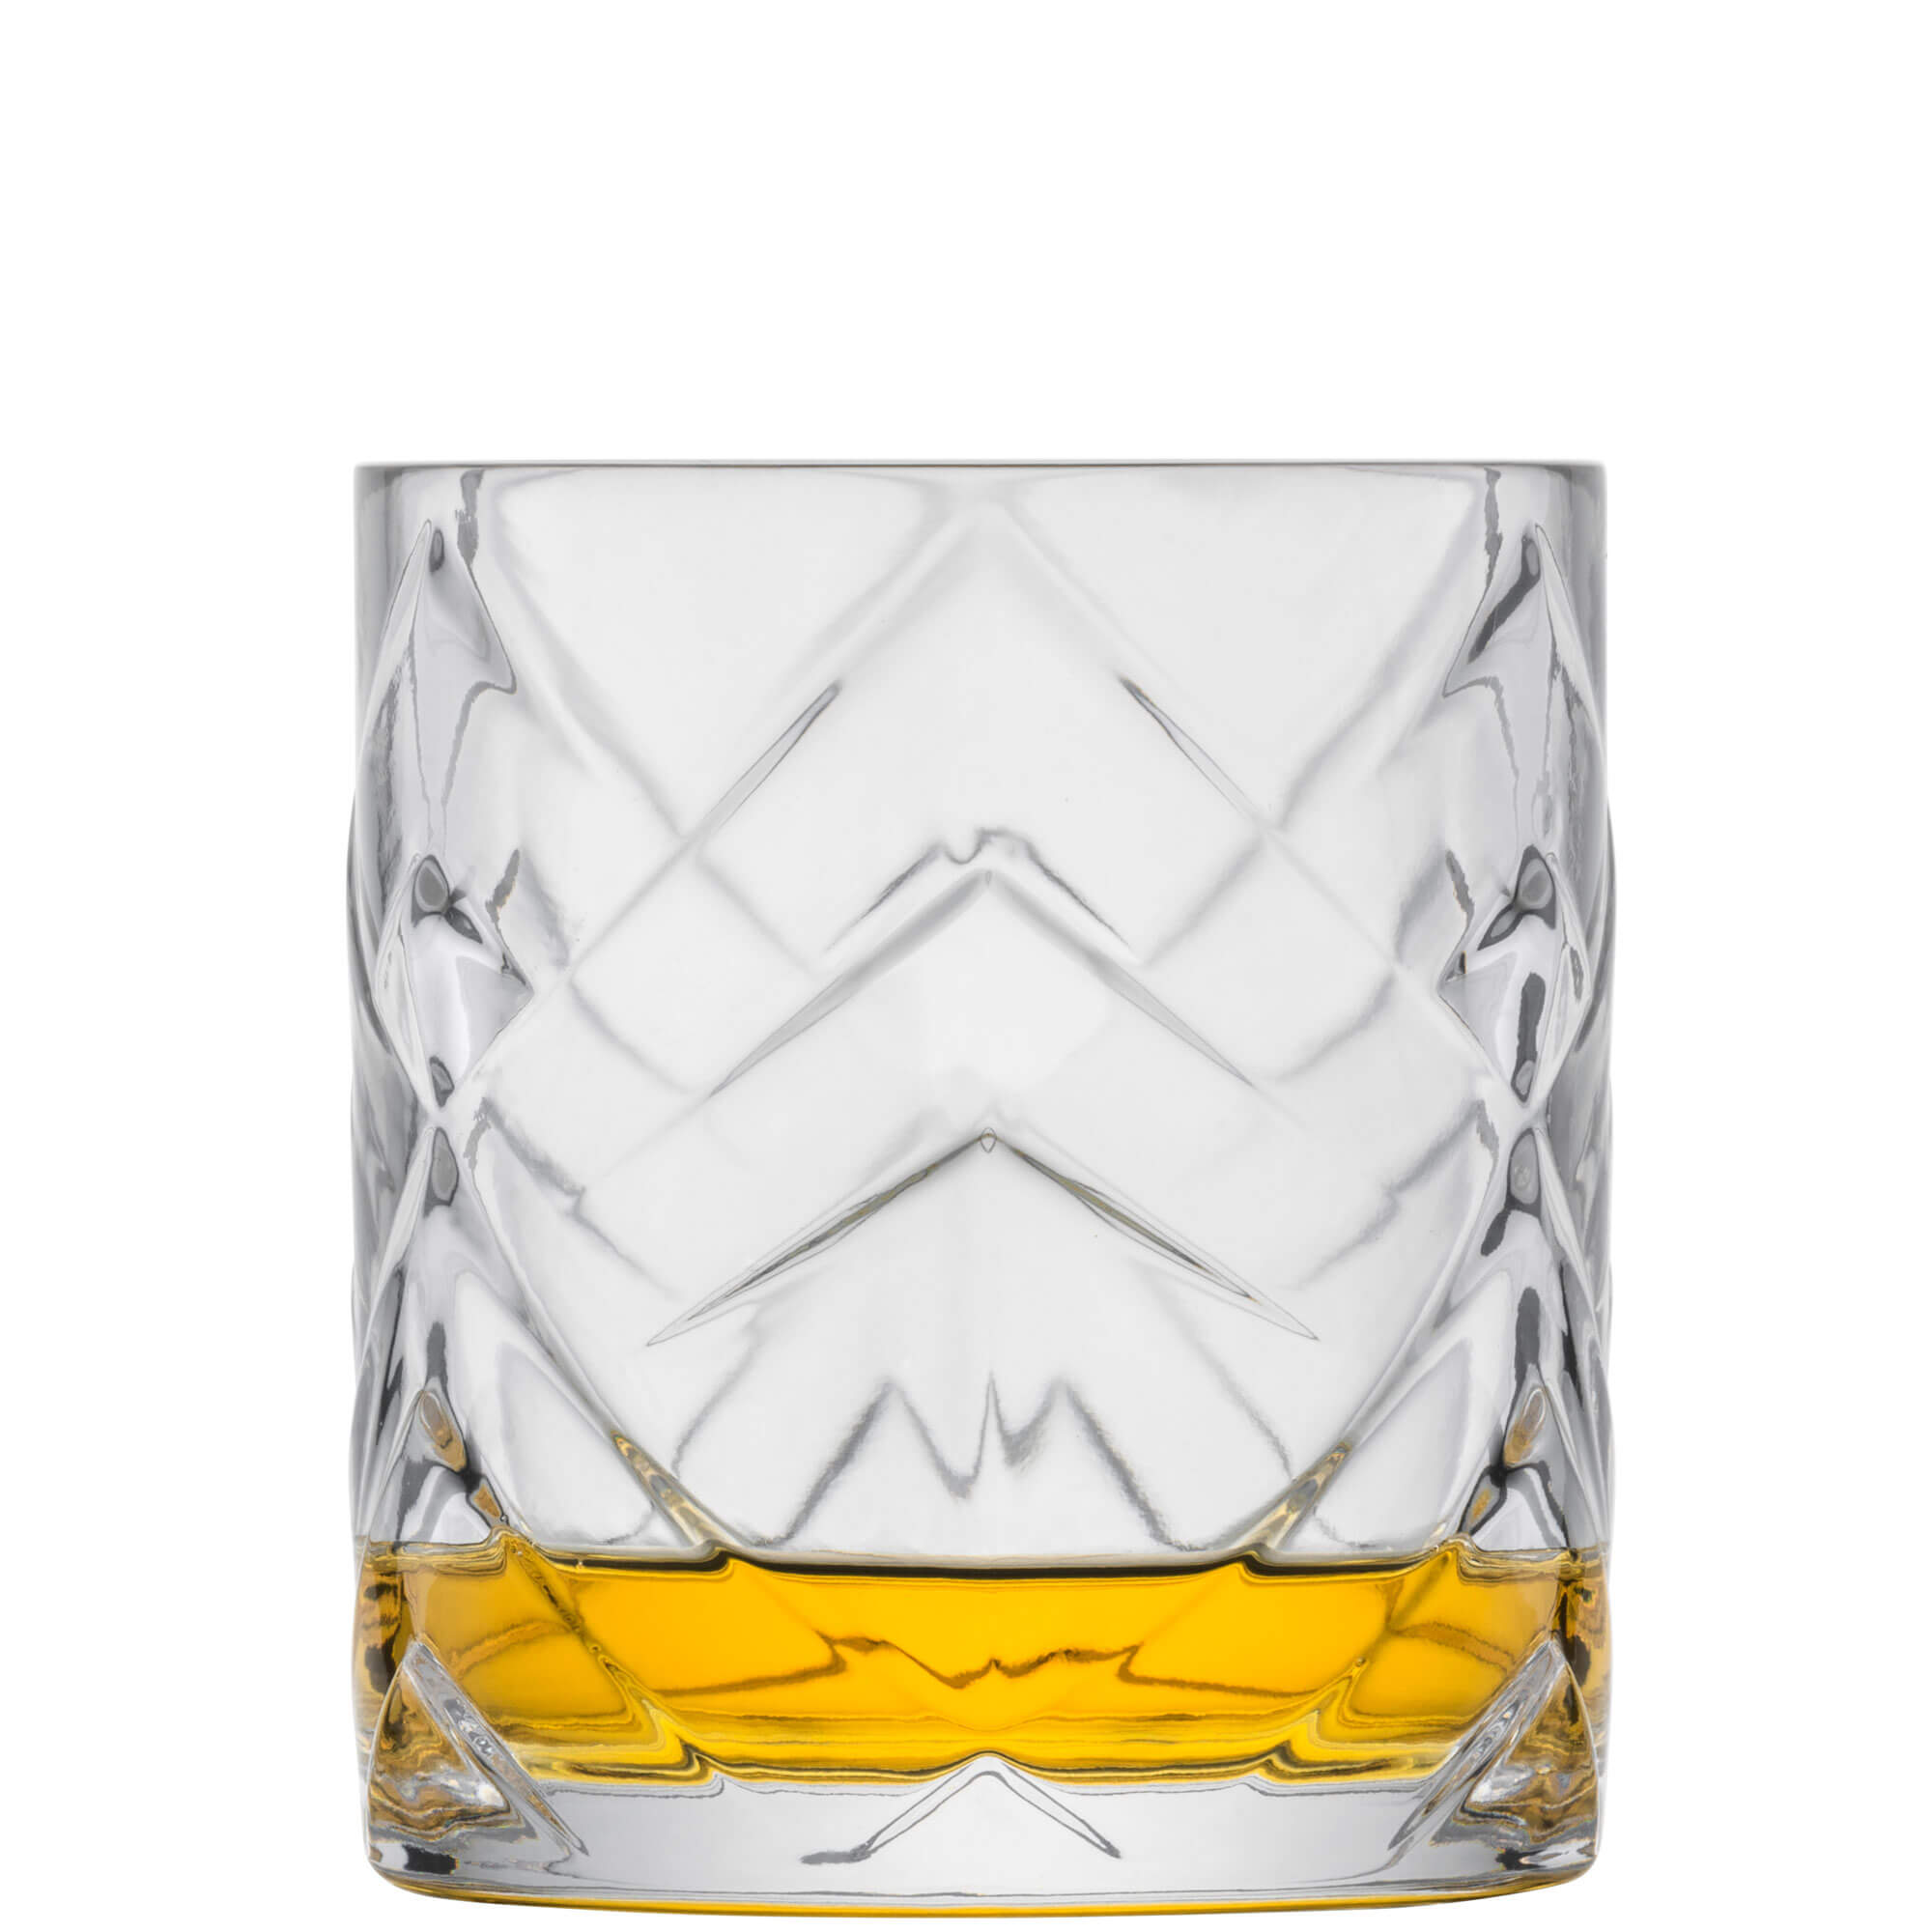 Whiskyglas Fascination, Zwiesel Glas - 343ml (1 Stk.)